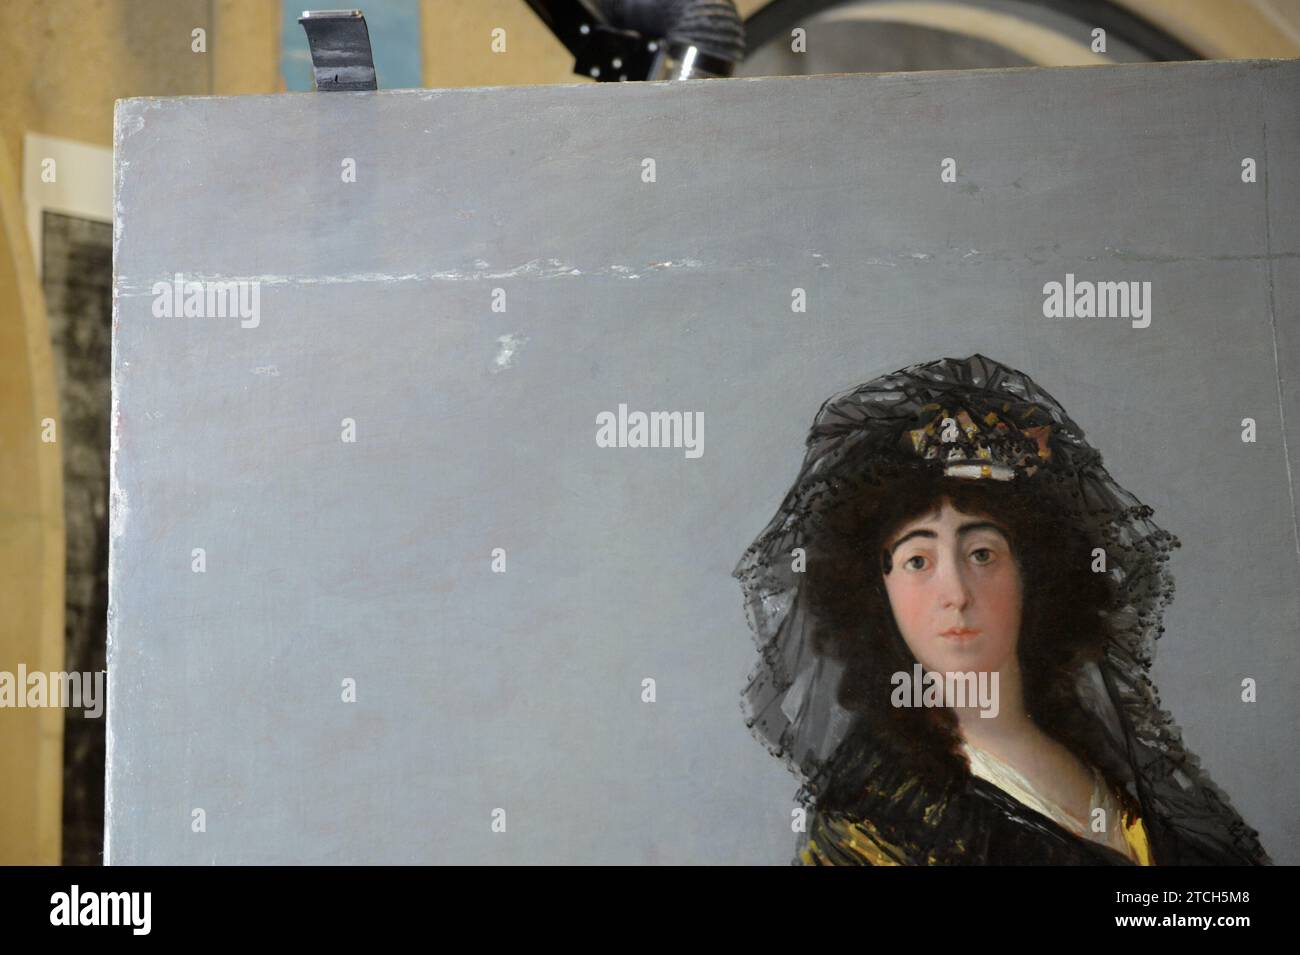 Madrid, 15/11/2016. Resoconto del restauro del dipinto di Goya "la Duchessa d'Alba" nel Museo del Prado. Foto: Maya Balanya ARCHDC. Crediti: Album / Archivo ABC / Maya Balanya Foto Stock